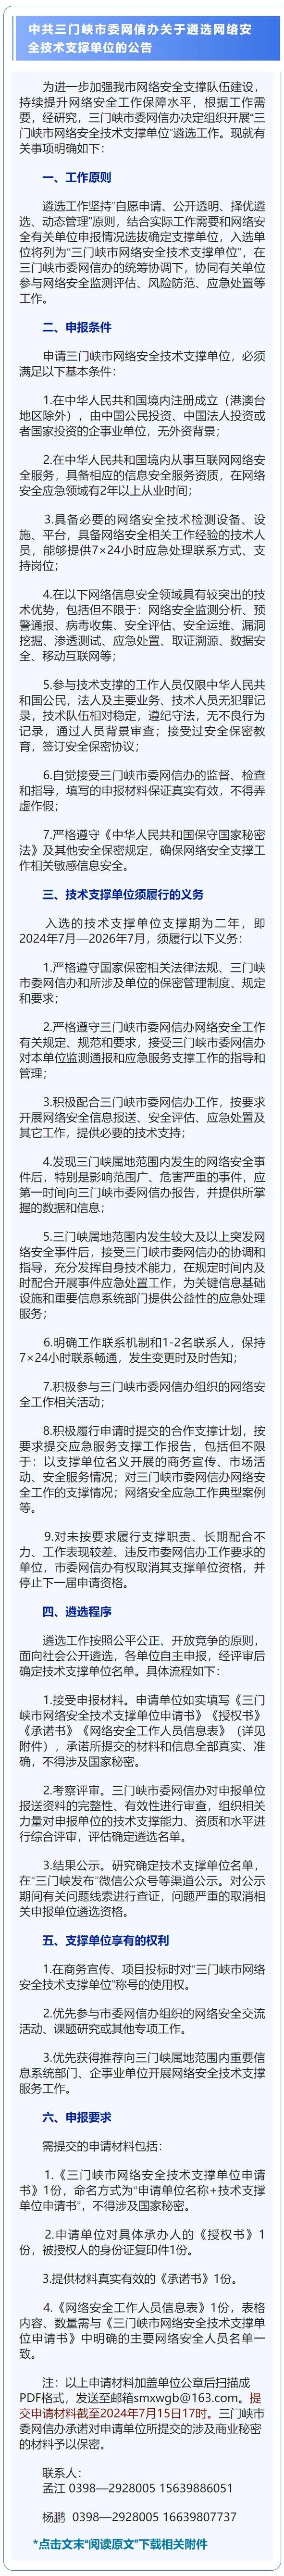 中共三门峡市委网信办关于遴选网络安全技术支撑单位的公告